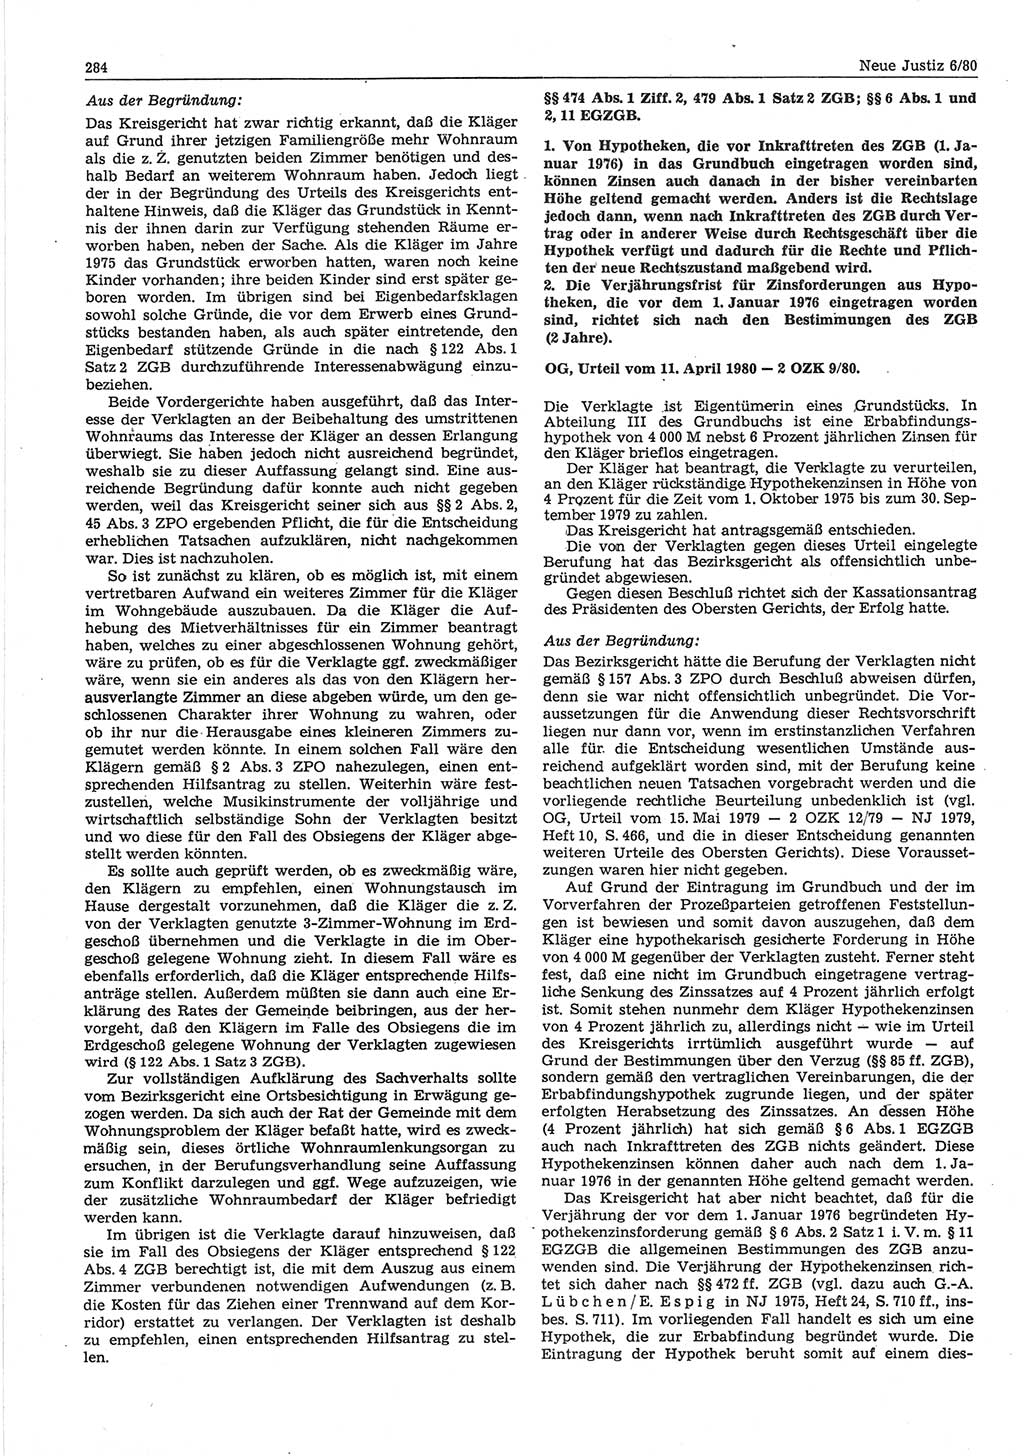 Neue Justiz (NJ), Zeitschrift für sozialistisches Recht und Gesetzlichkeit [Deutsche Demokratische Republik (DDR)], 34. Jahrgang 1980, Seite 284 (NJ DDR 1980, S. 284)